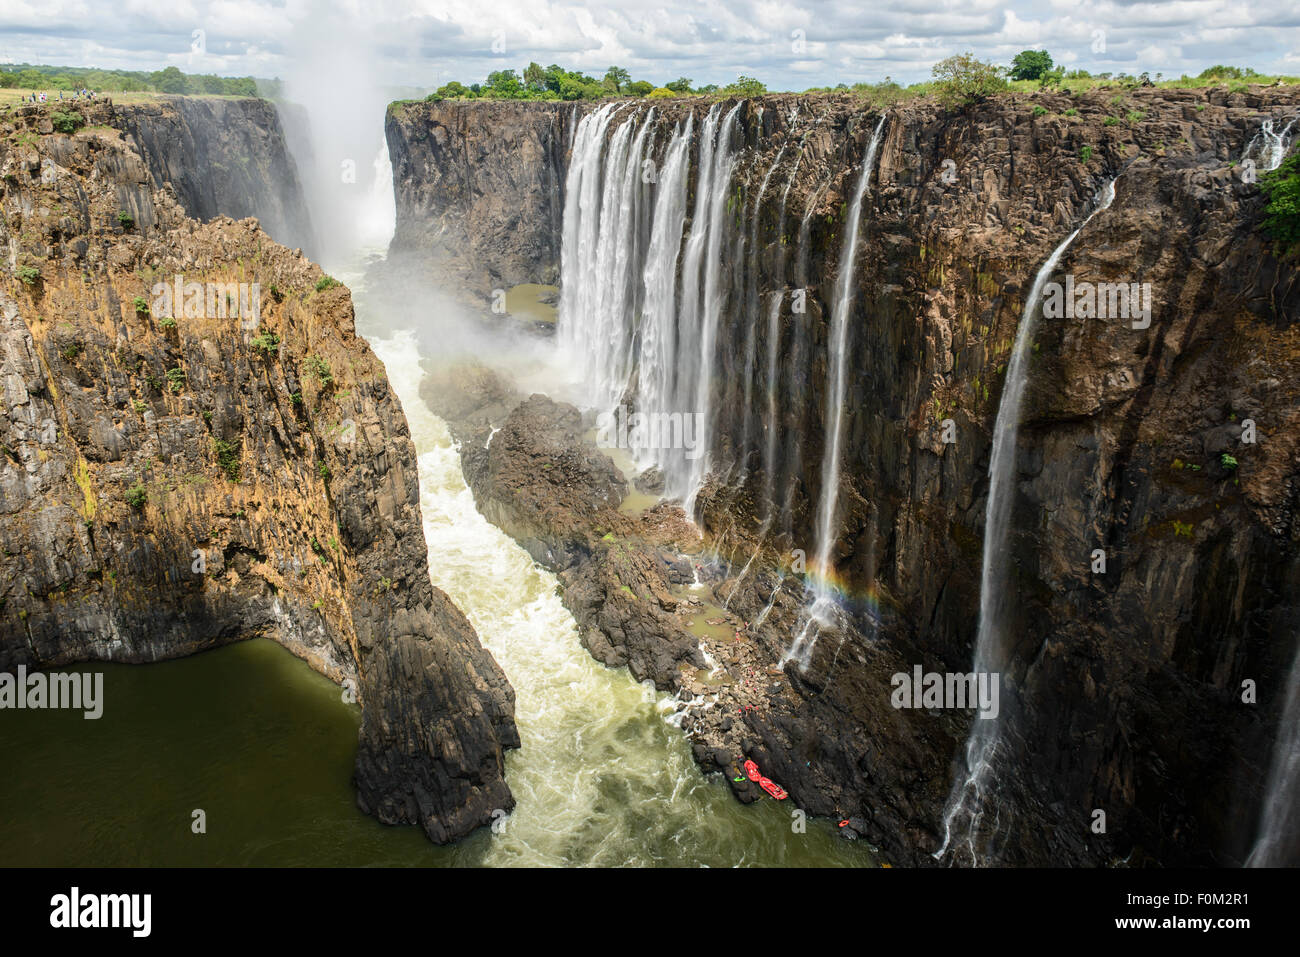 Victoria falls, Zambia, Africa Stock Photo